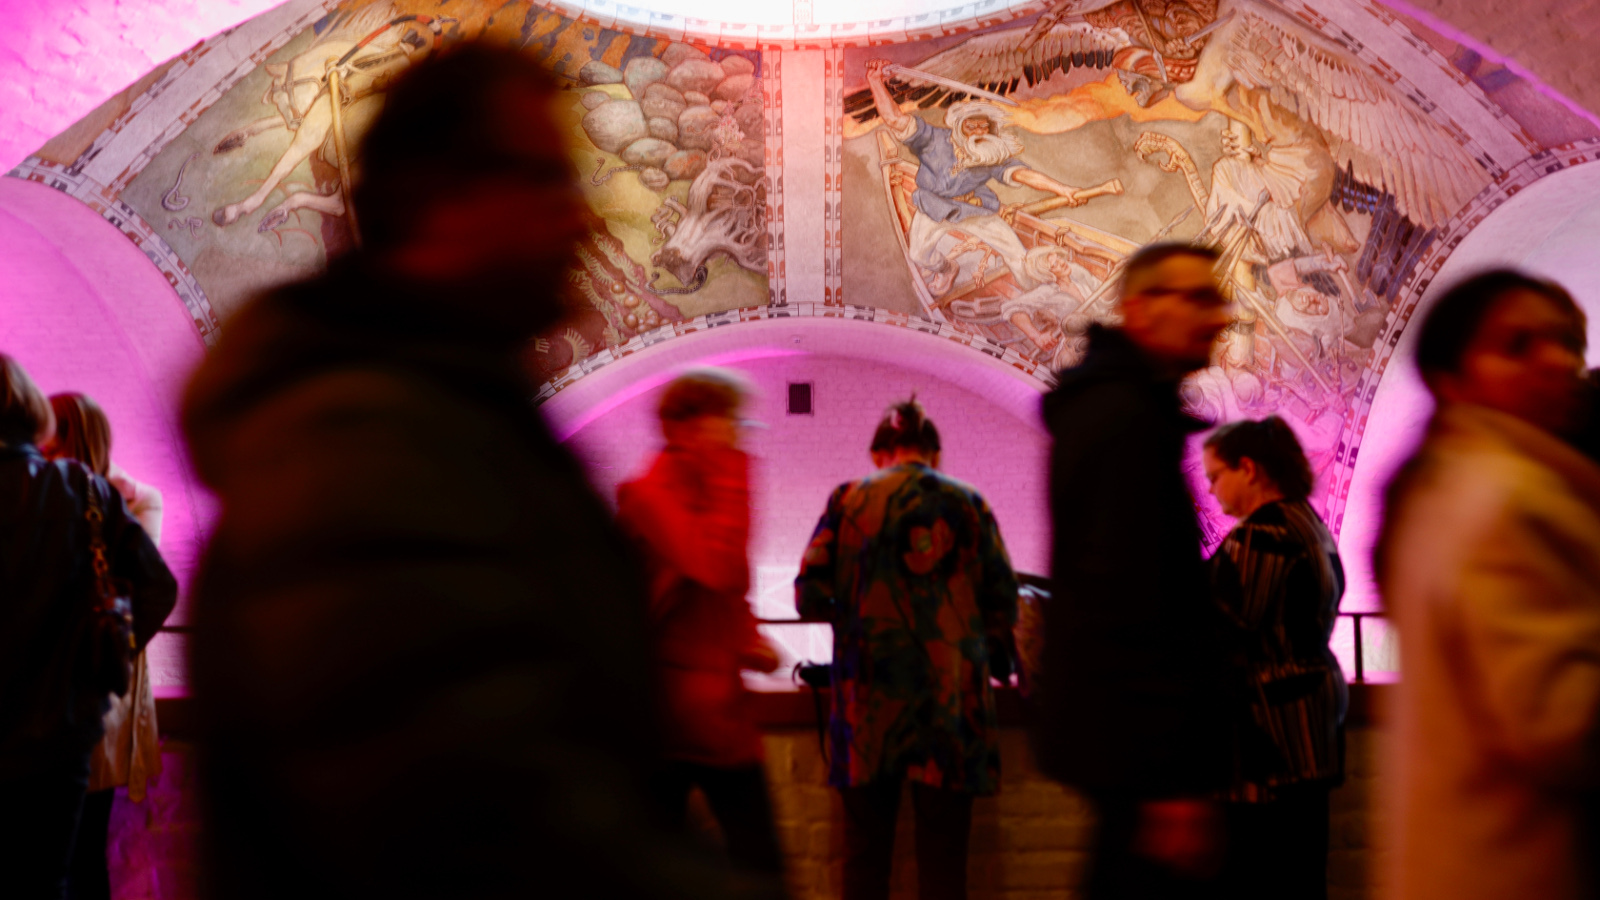 Kuvassa on Kansallismuseon aula, jossa liikkuu paljon ihmisiä.  Kuvassa näkyy pinkkiä kattoa, jossa on freskoja.